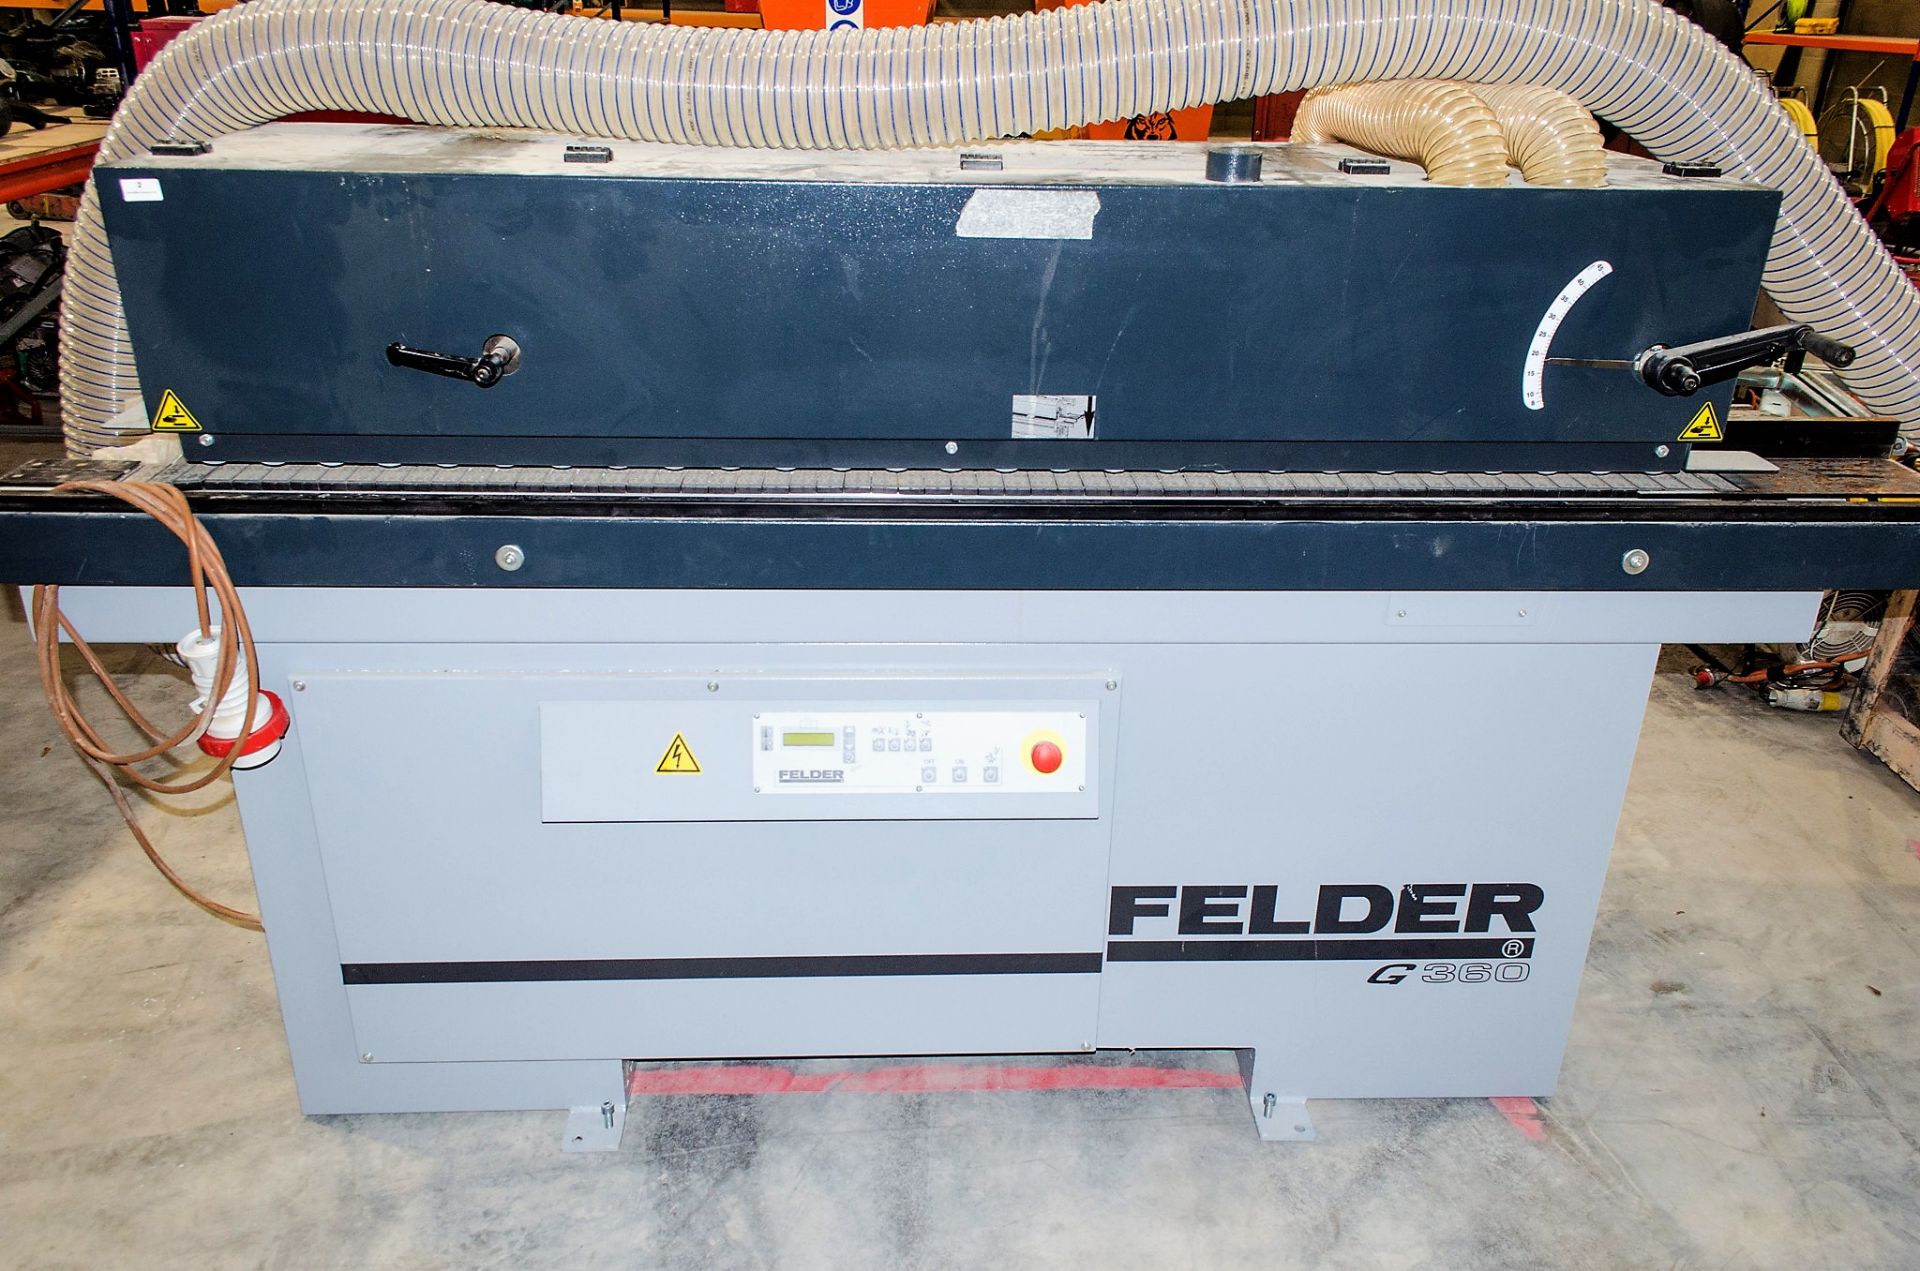 Felder G360-4 Edgebander machine Year: 2020 S/N: 250401120 V000028 - Image 5 of 11